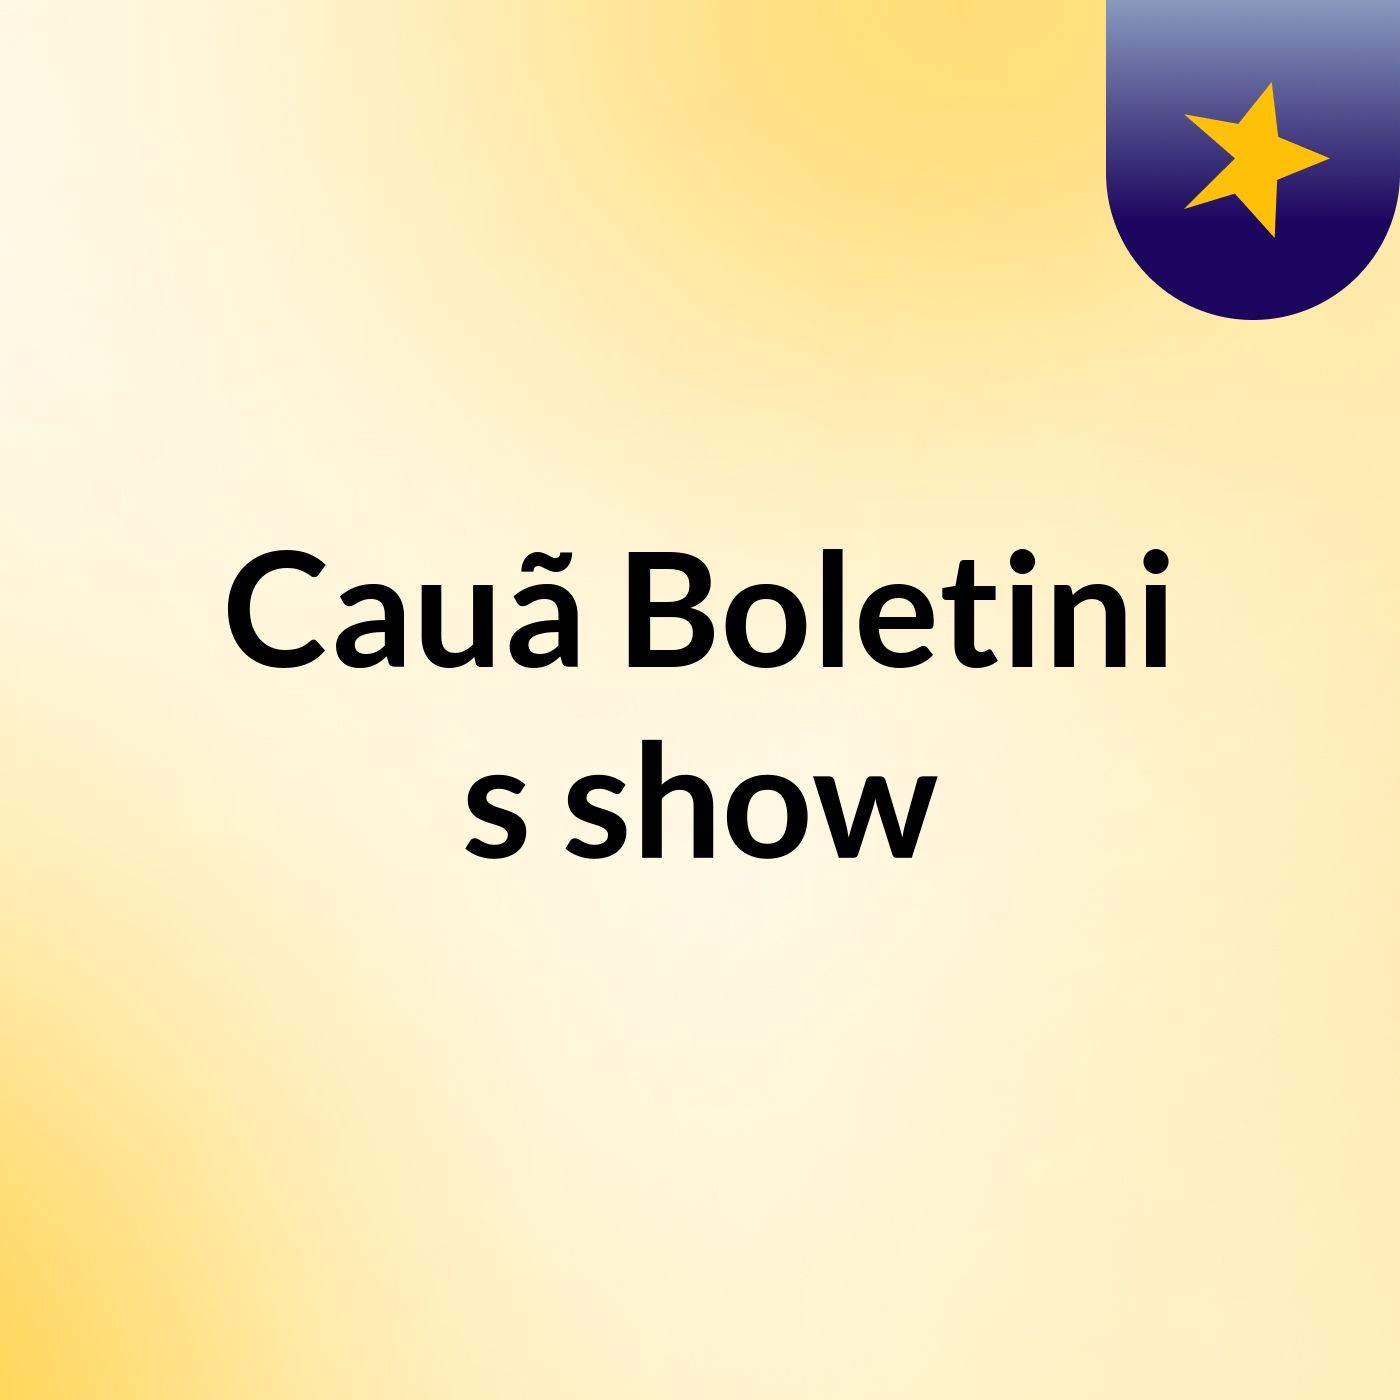 Cauã Boletini's show